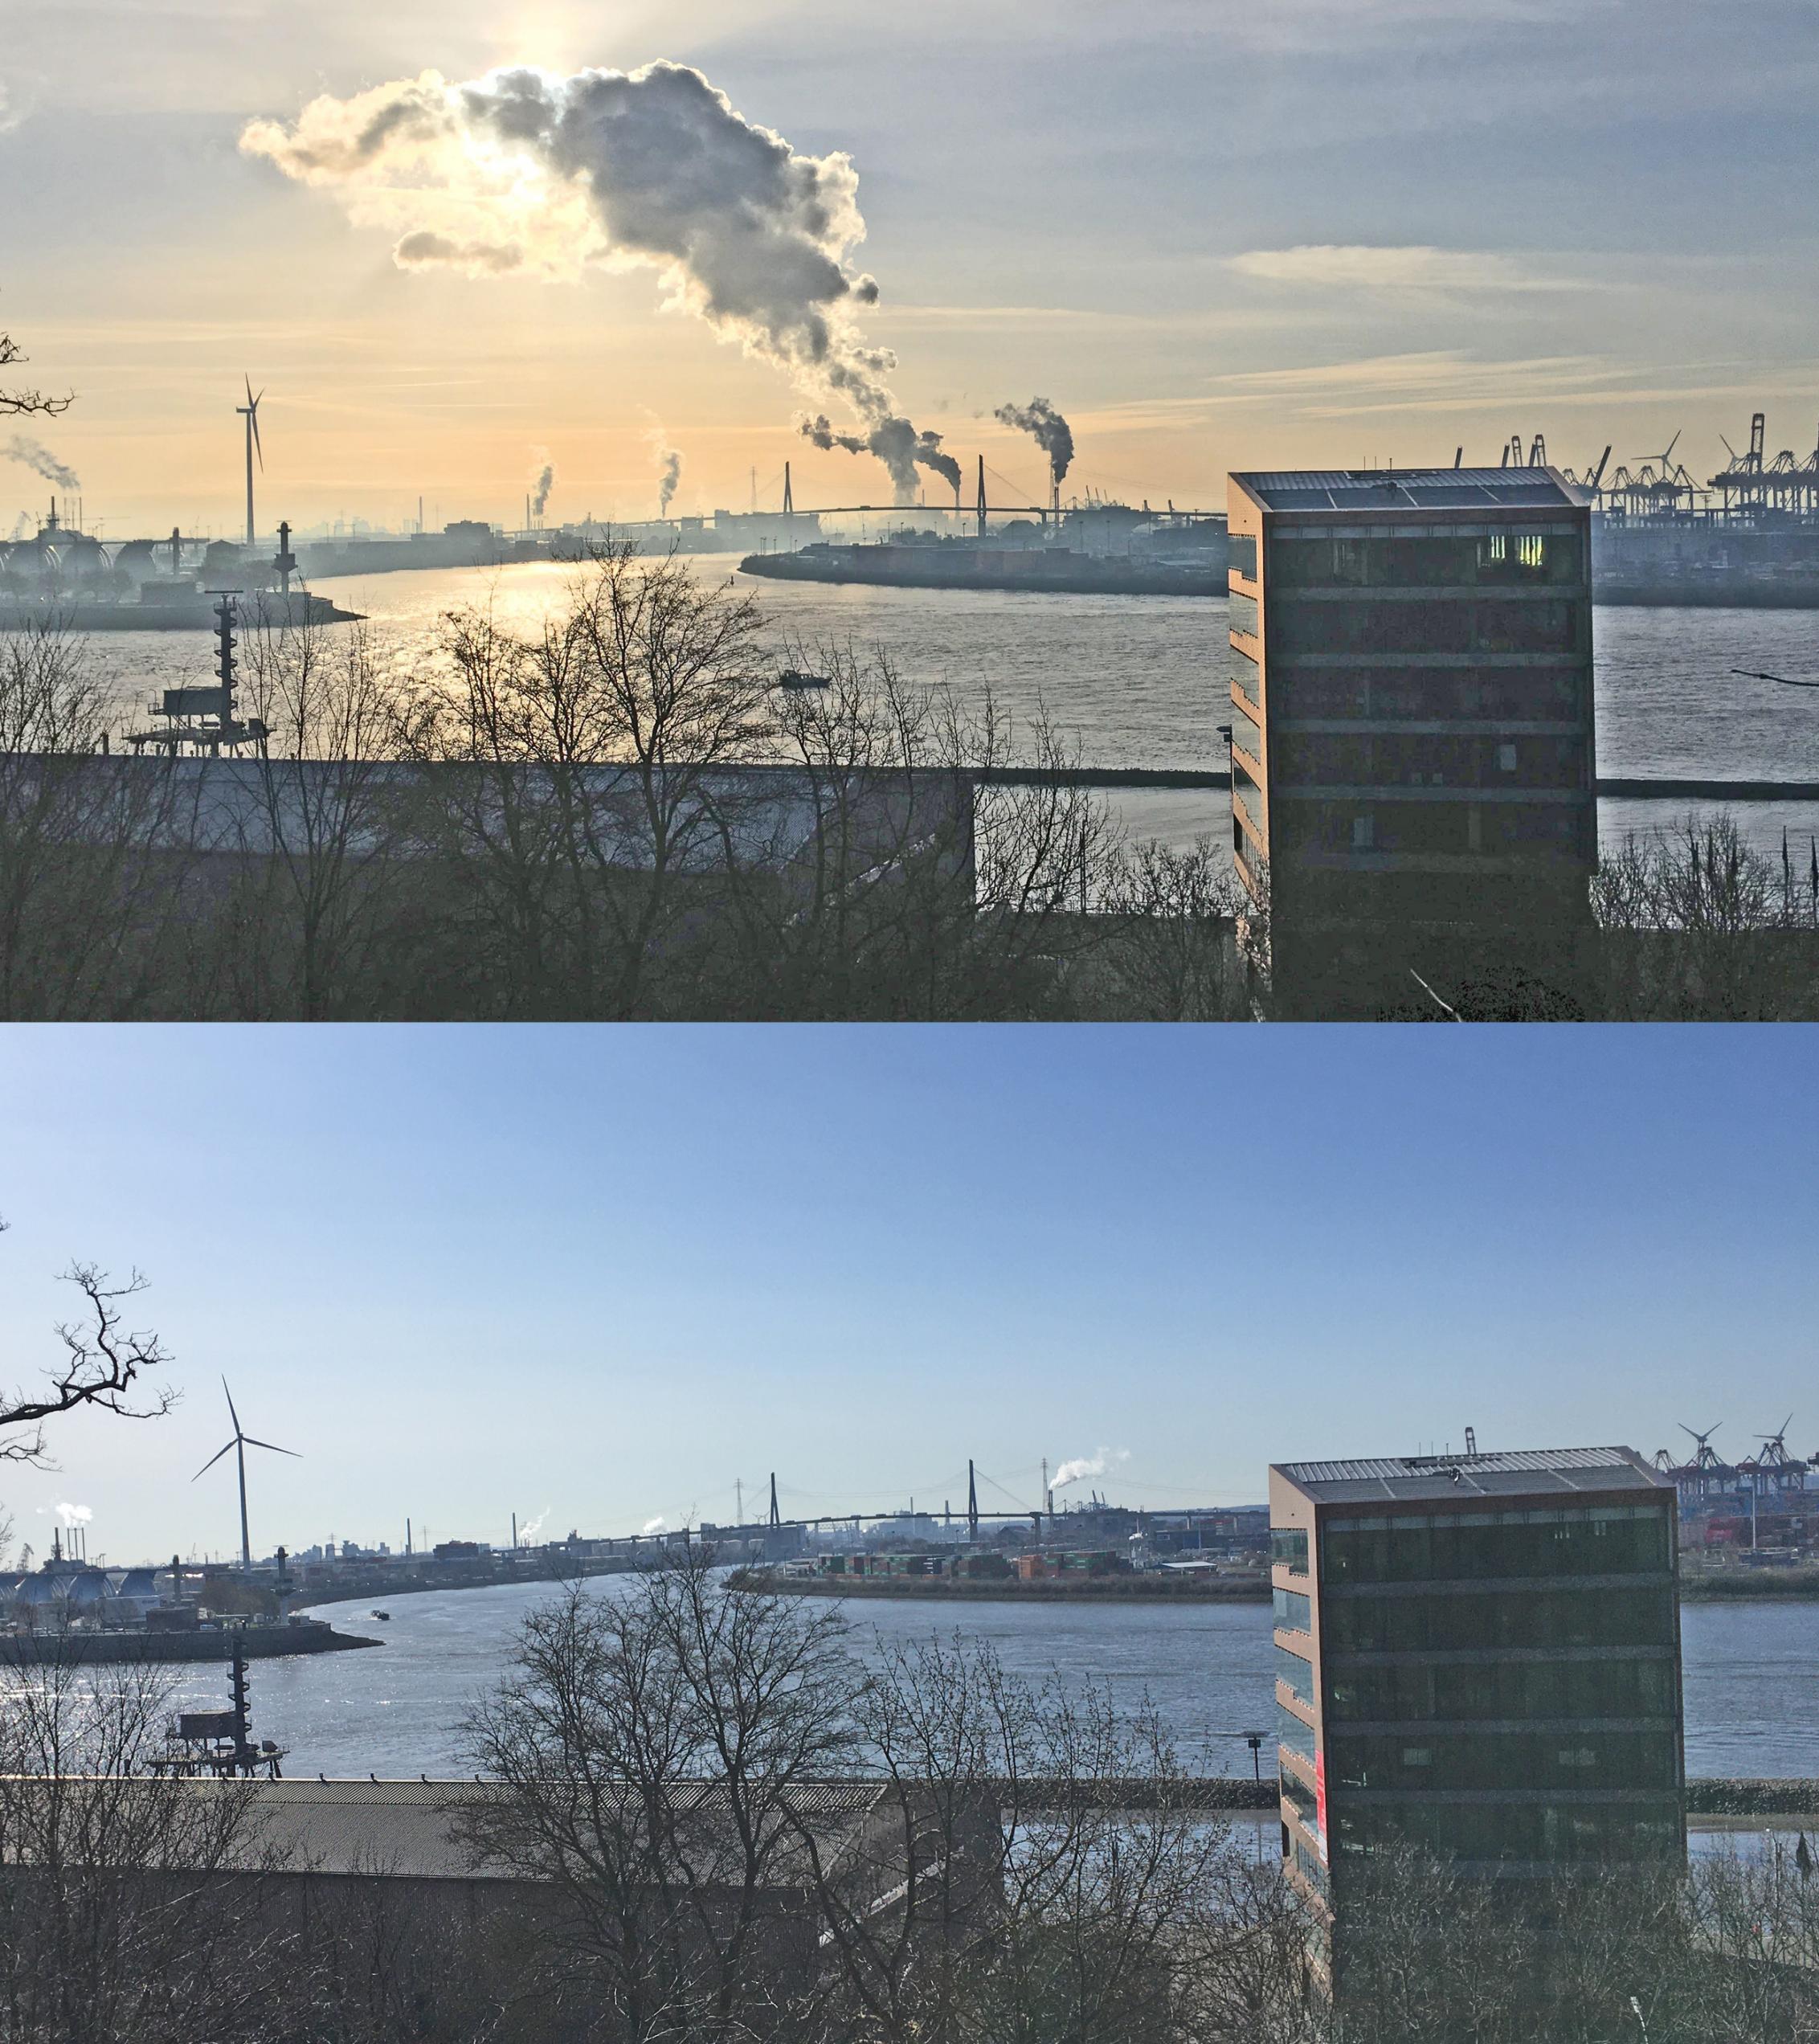 Vom Heine-Park in Hamburg-Altona geht der Blick an einem Bürohaus mit kupferverkleideter Fassade vorbei über die Elbe Richtung Köhlbrand und Köhlbrandbrücke im Hintergrund. Das obere Bild zeigt den Blick von Hamburg-Altona nach Süden im Januar 2019, leichte Schleier liegen über dem Blau, eine große Dampfwolke aus einen Schornstein schirmt die Sonne ab. Das untere stammt aus dem März 2020, der Himmel ist klar und blau und die Dampfwolke fehlt. Sie kommt vom Kohlekraftwerk Moorburg, das im März 2020 mangels Nachfrage einige Tage abgeschaltet war.